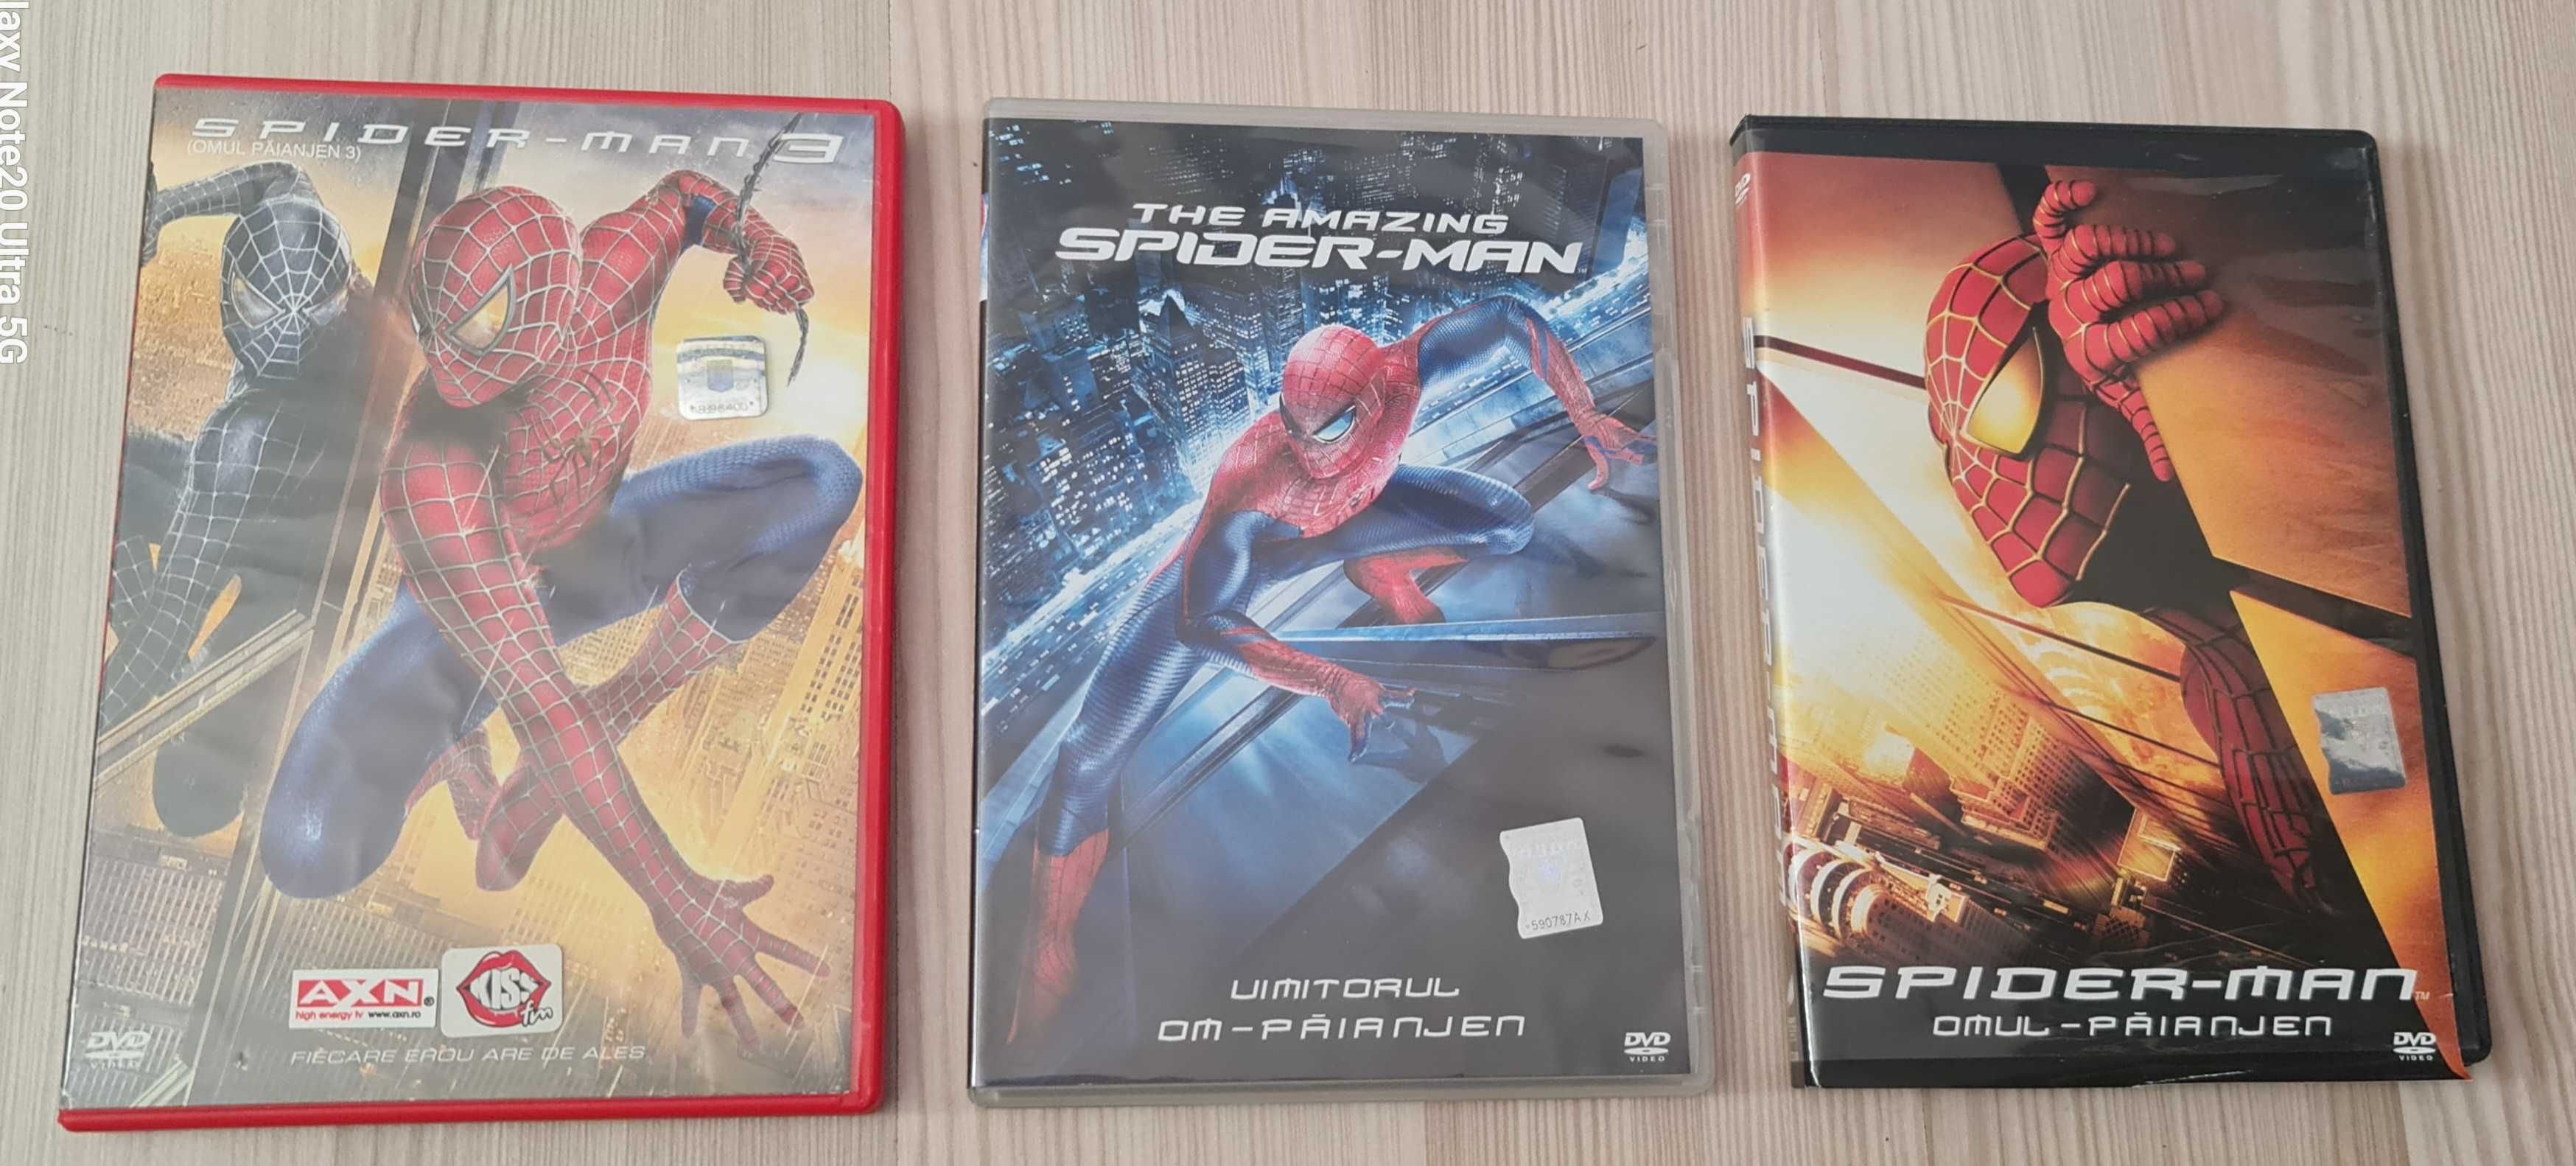 Spiderman,4 filme,utilizate,sunt in stare foarte buna,35 lei setul.